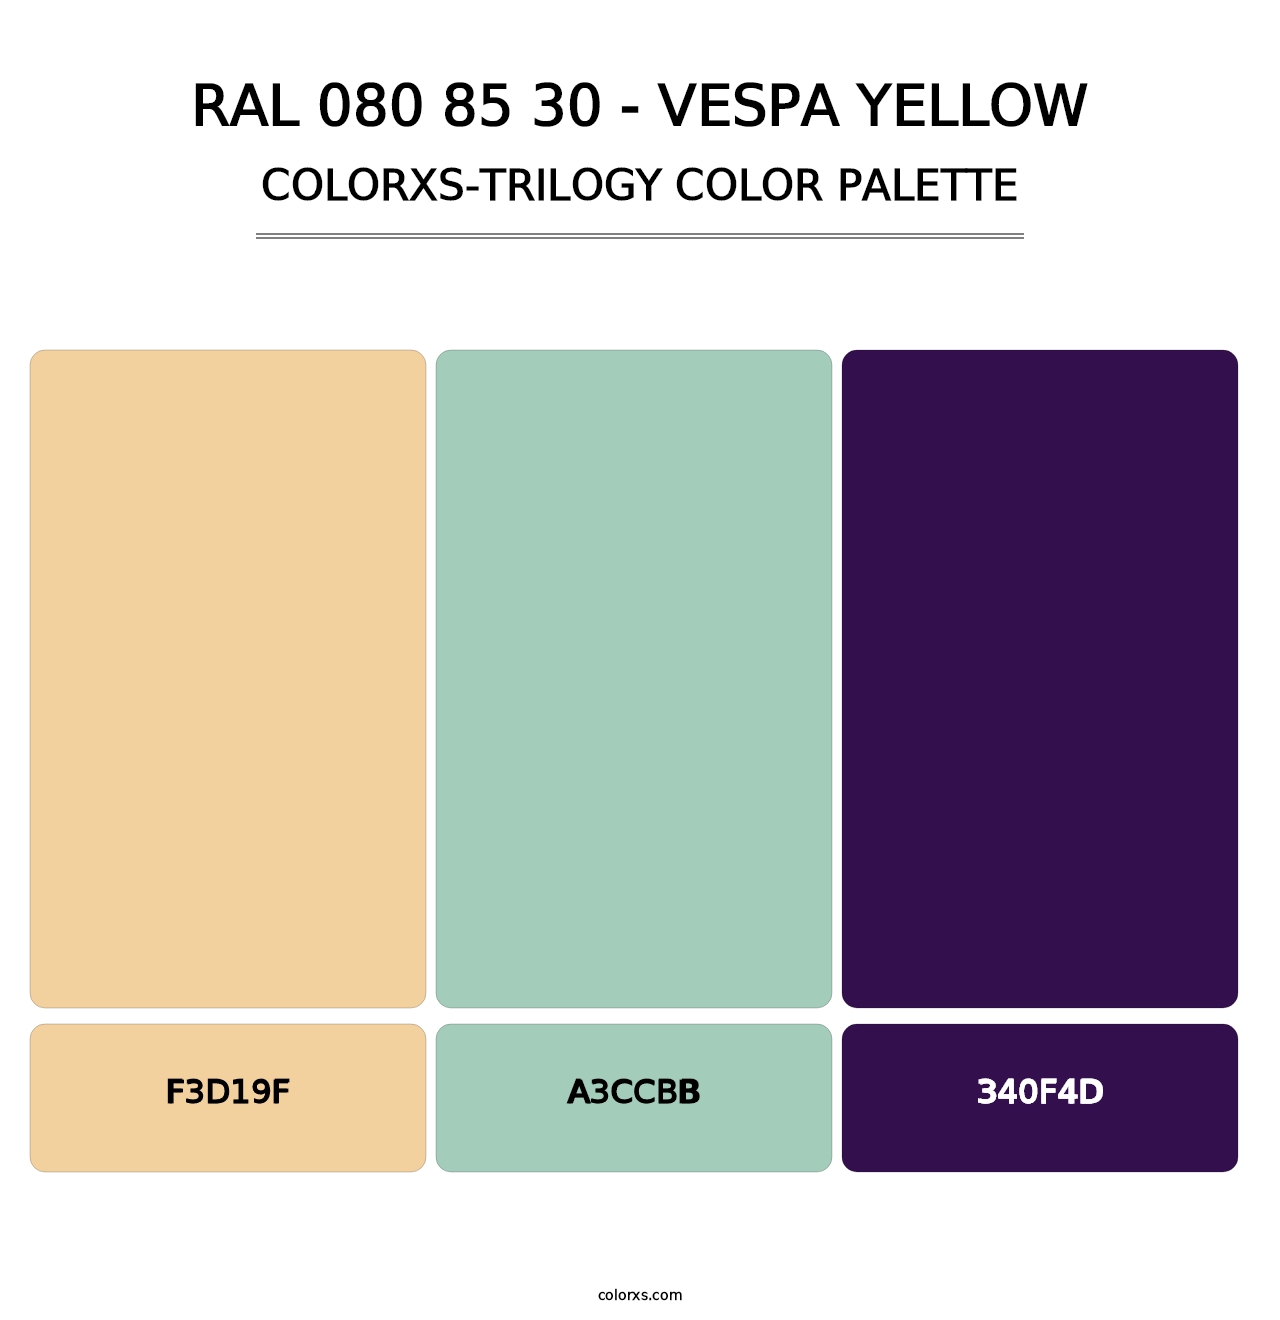 RAL 080 85 30 - Vespa Yellow - Colorxs Trilogy Palette